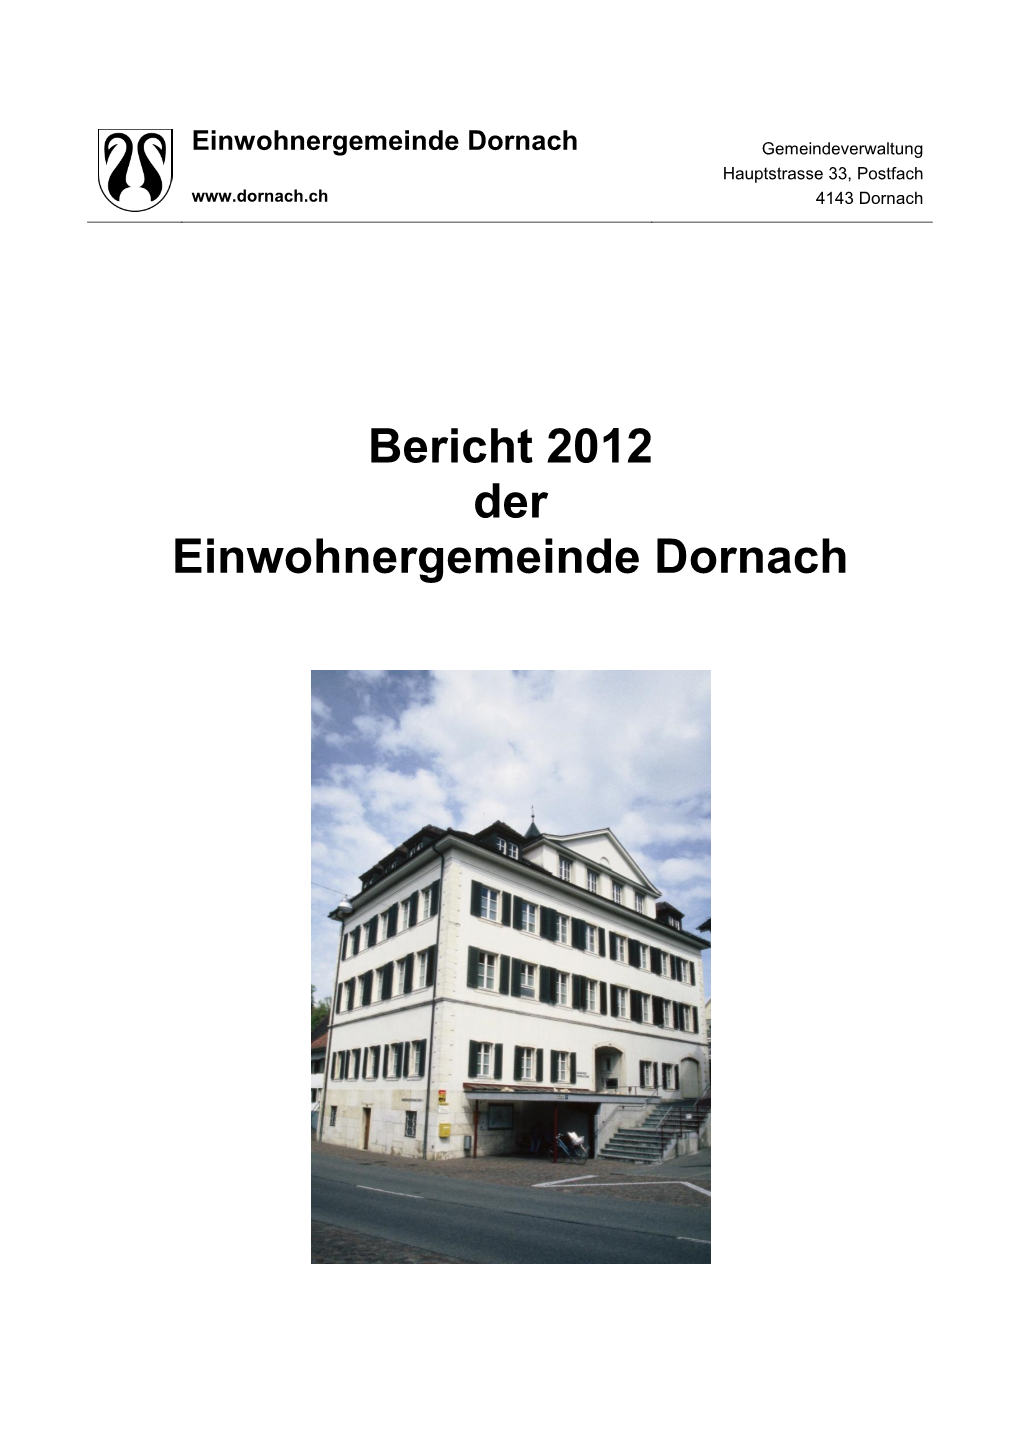 Bericht 2012 Der Einwohnergemeinde Dornach